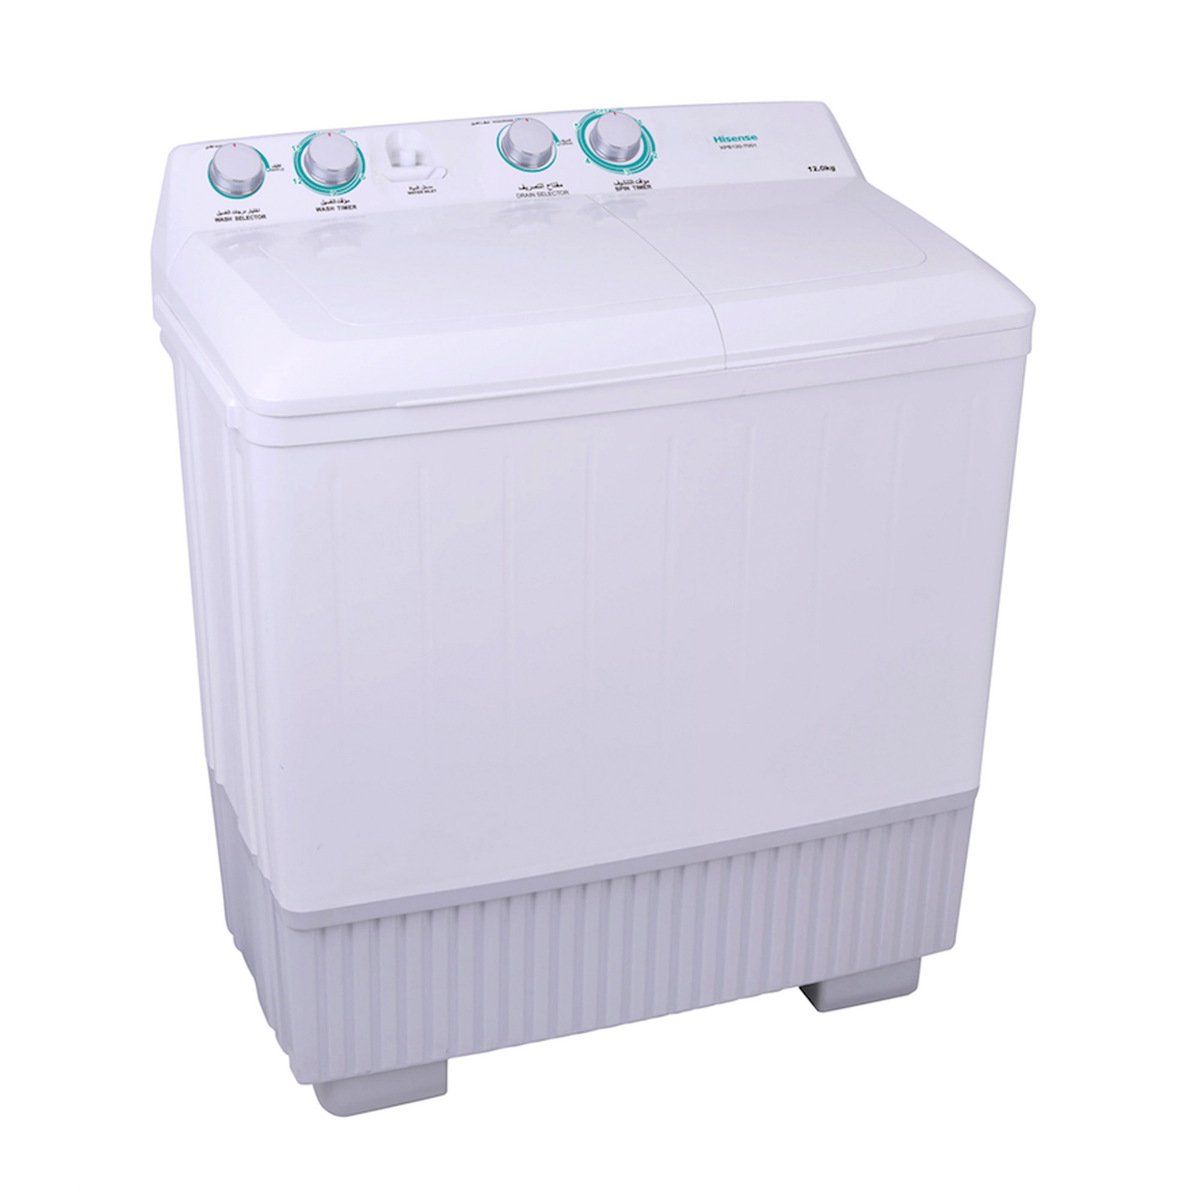 Hisense Semi Automatic Washing Machine XPB120-7001 12KG